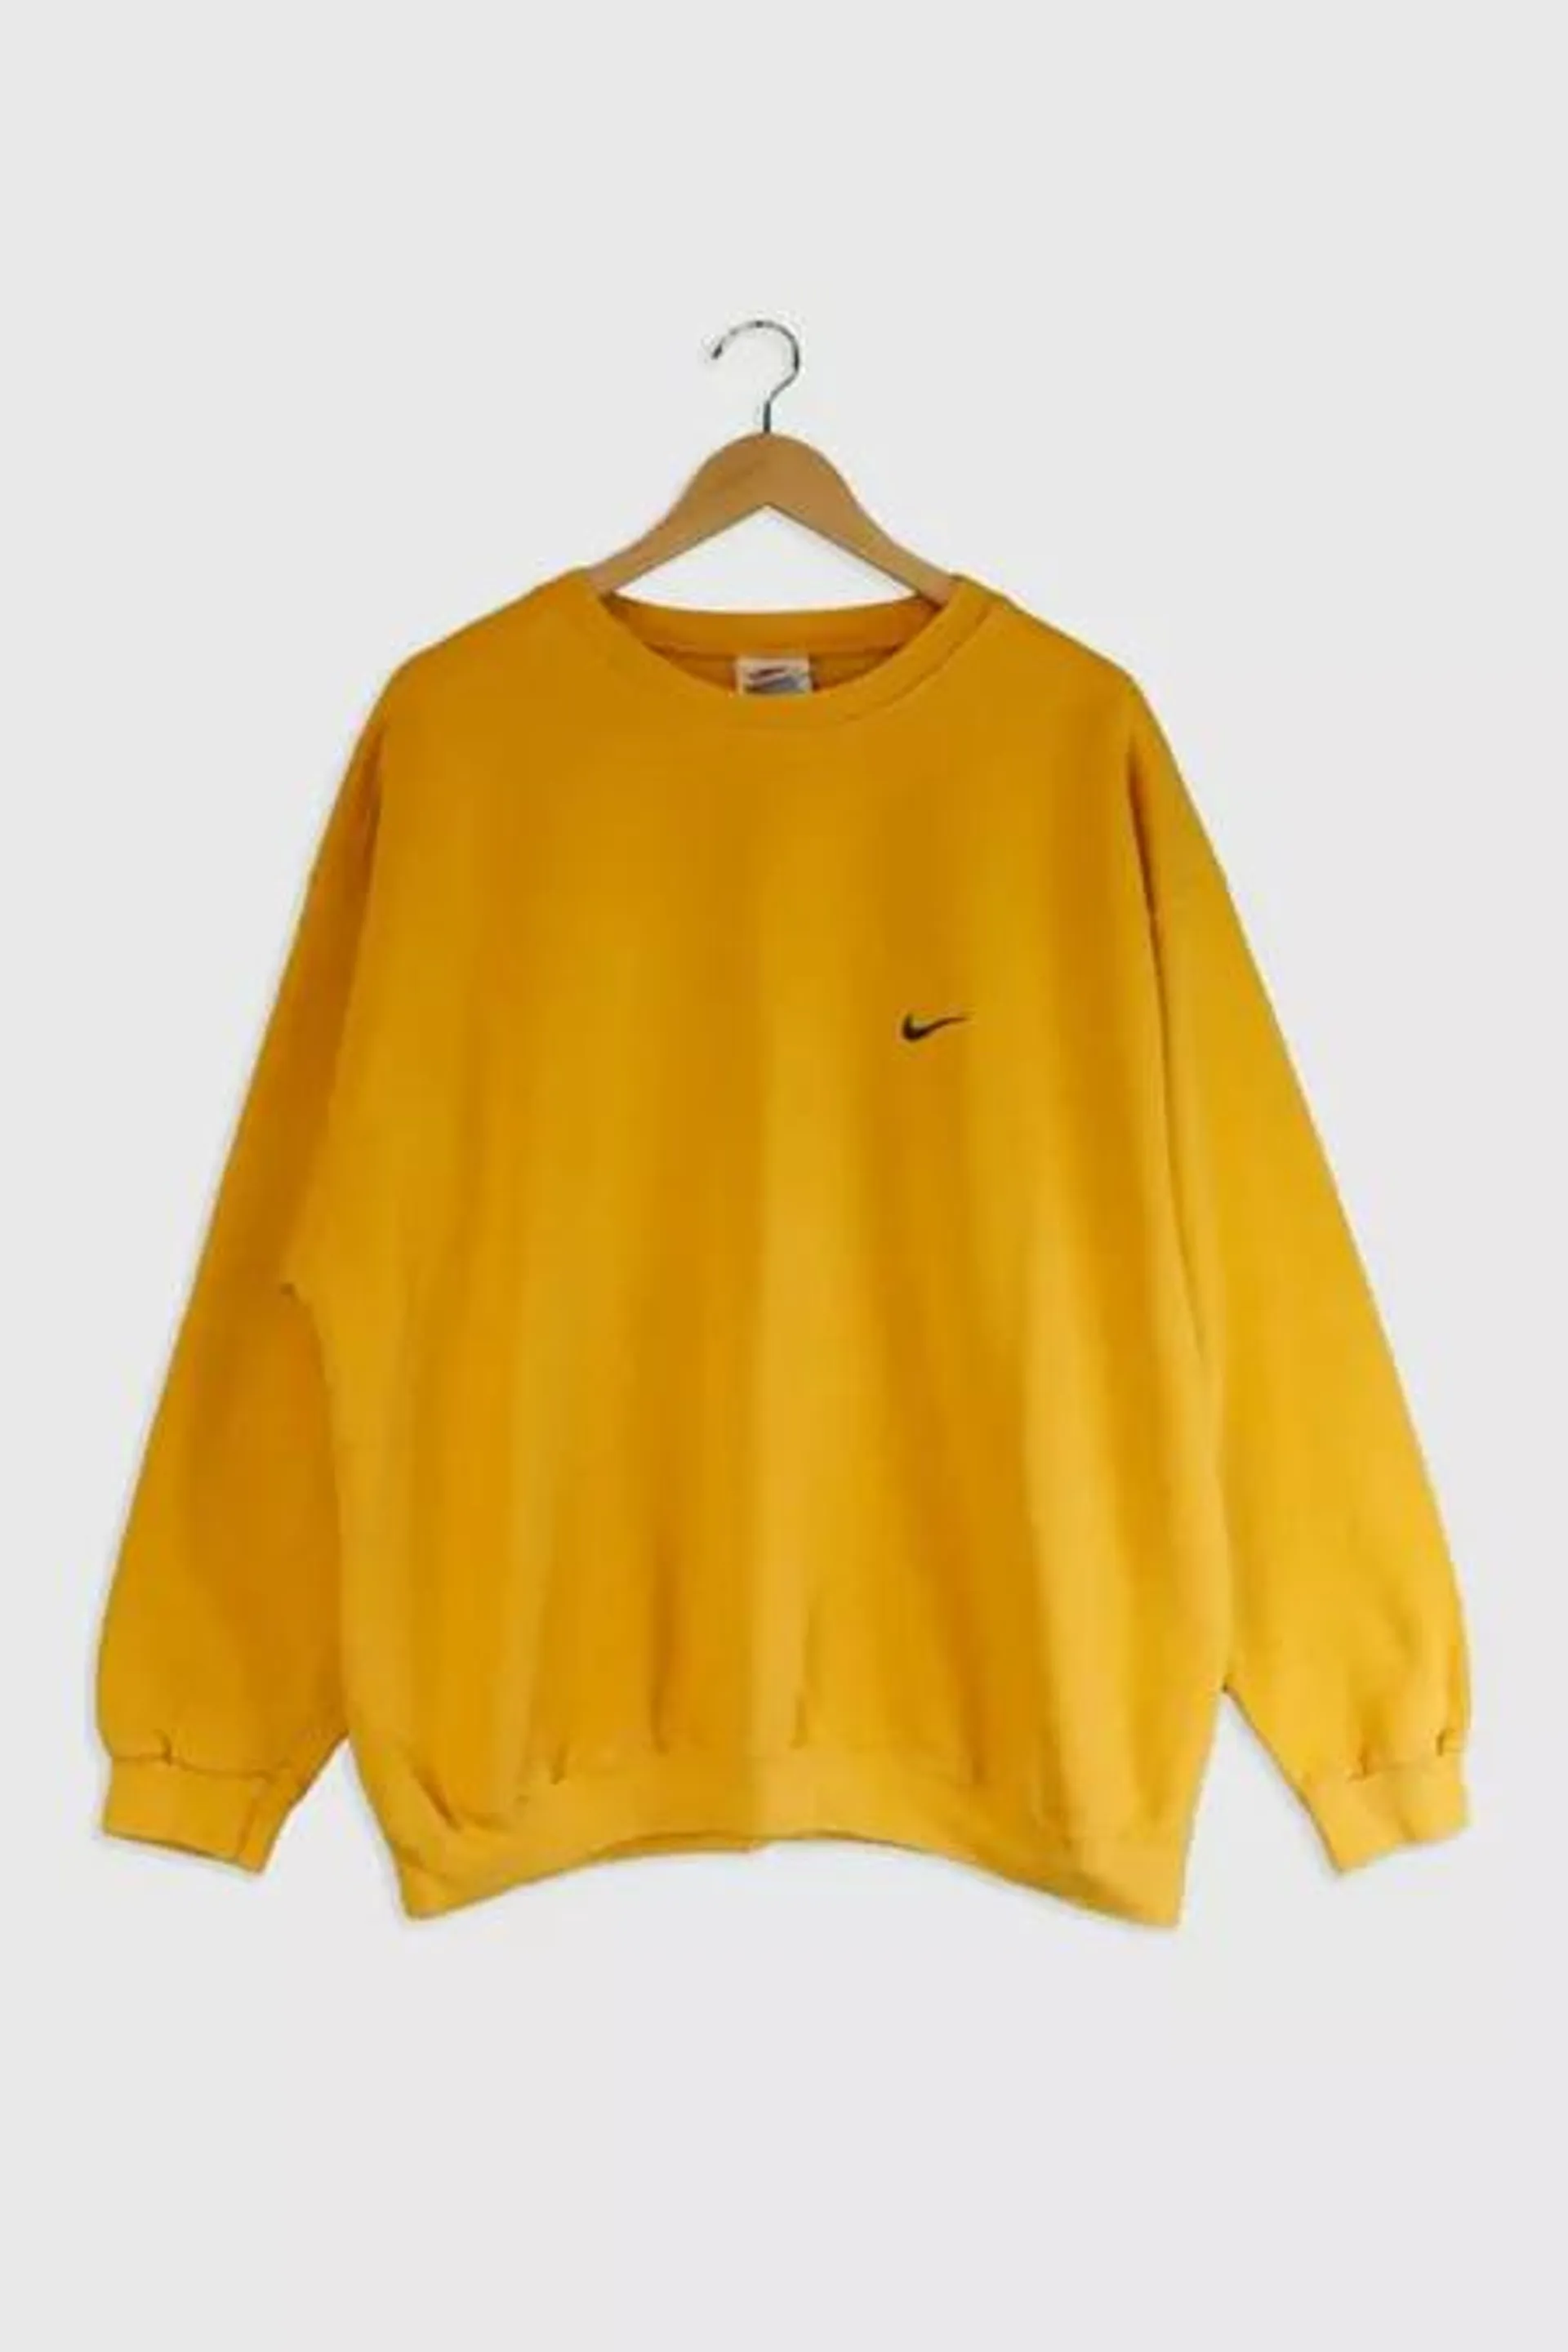 Vintage Nike Basics Embroidered Sweatshirt